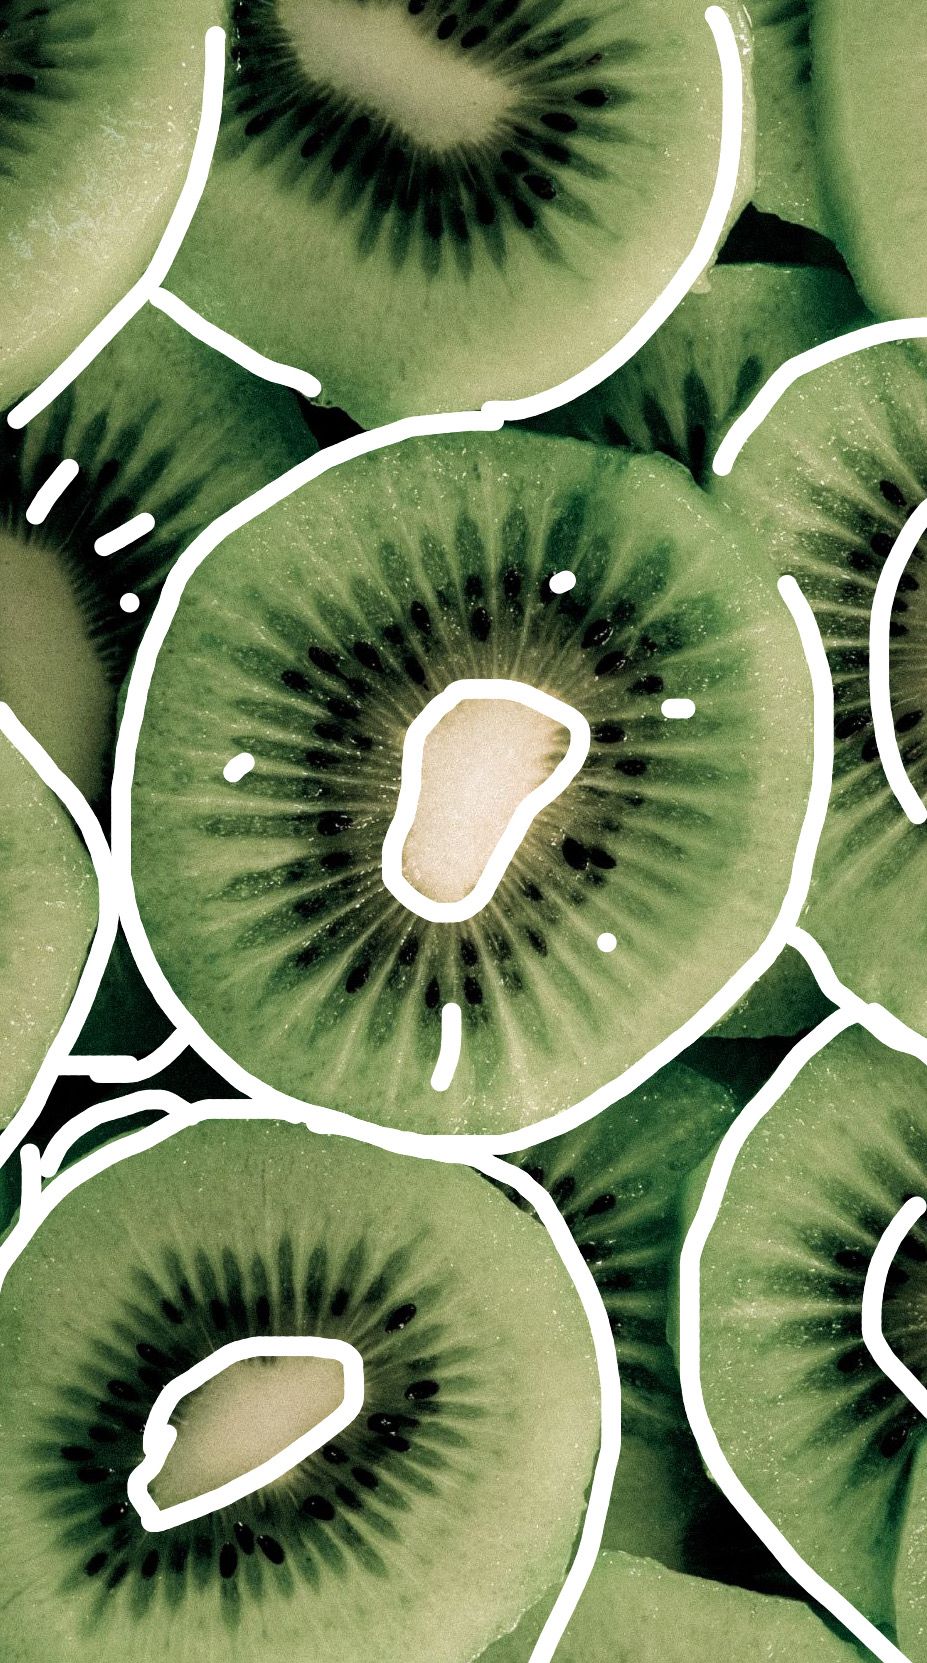 A photo of kiwi slices with a green hue. - Kiwi